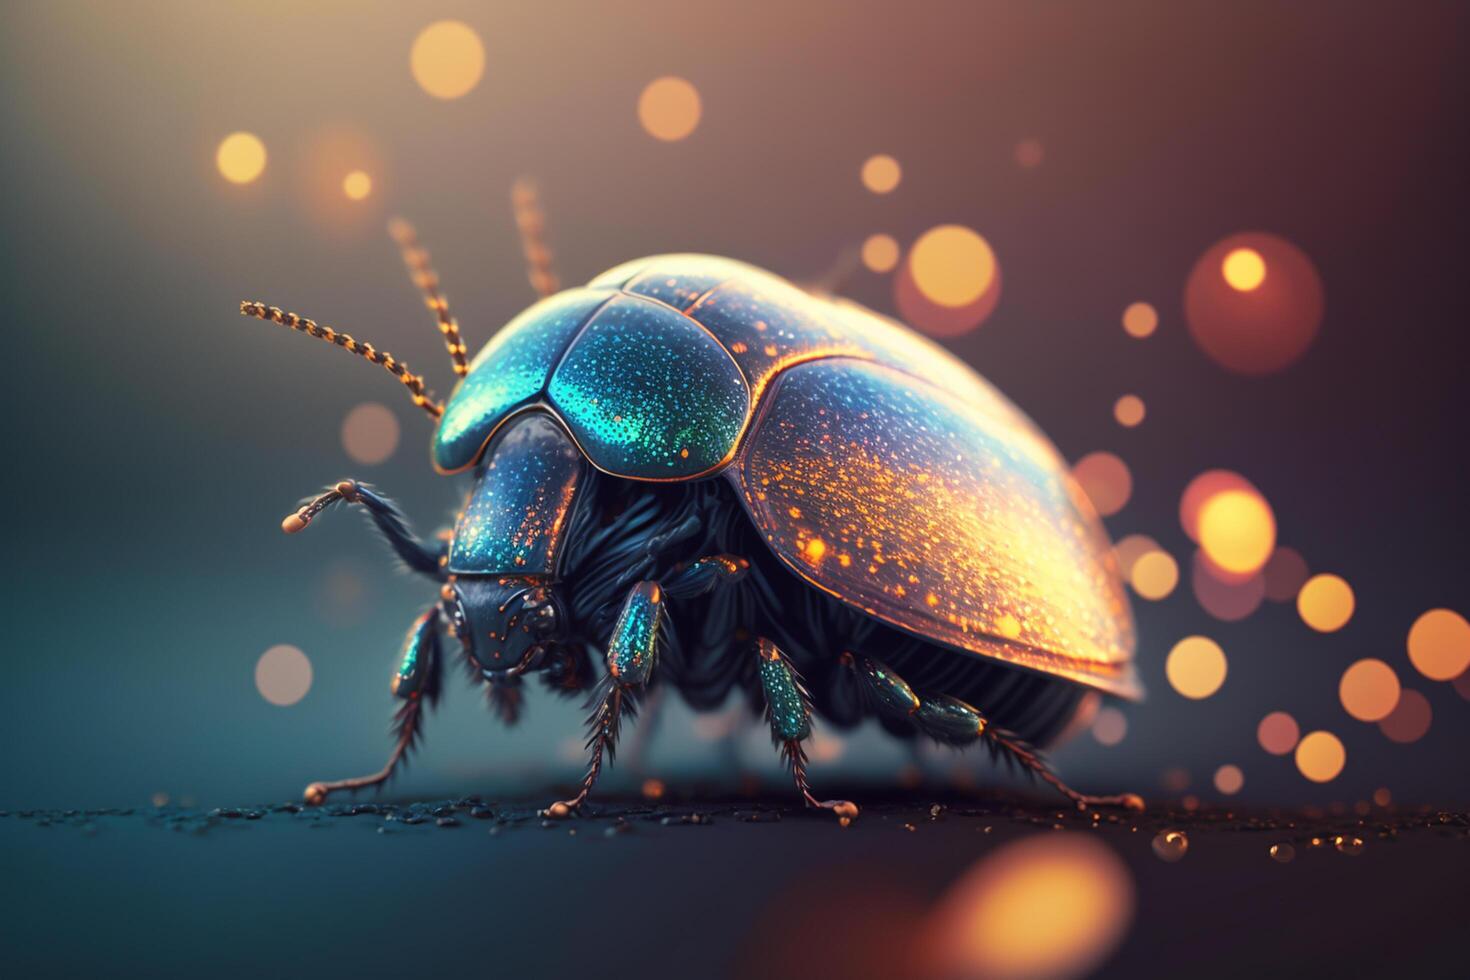 Híper realista ilustración de un escarabajo insecto, de cerca Disparo ai generado foto